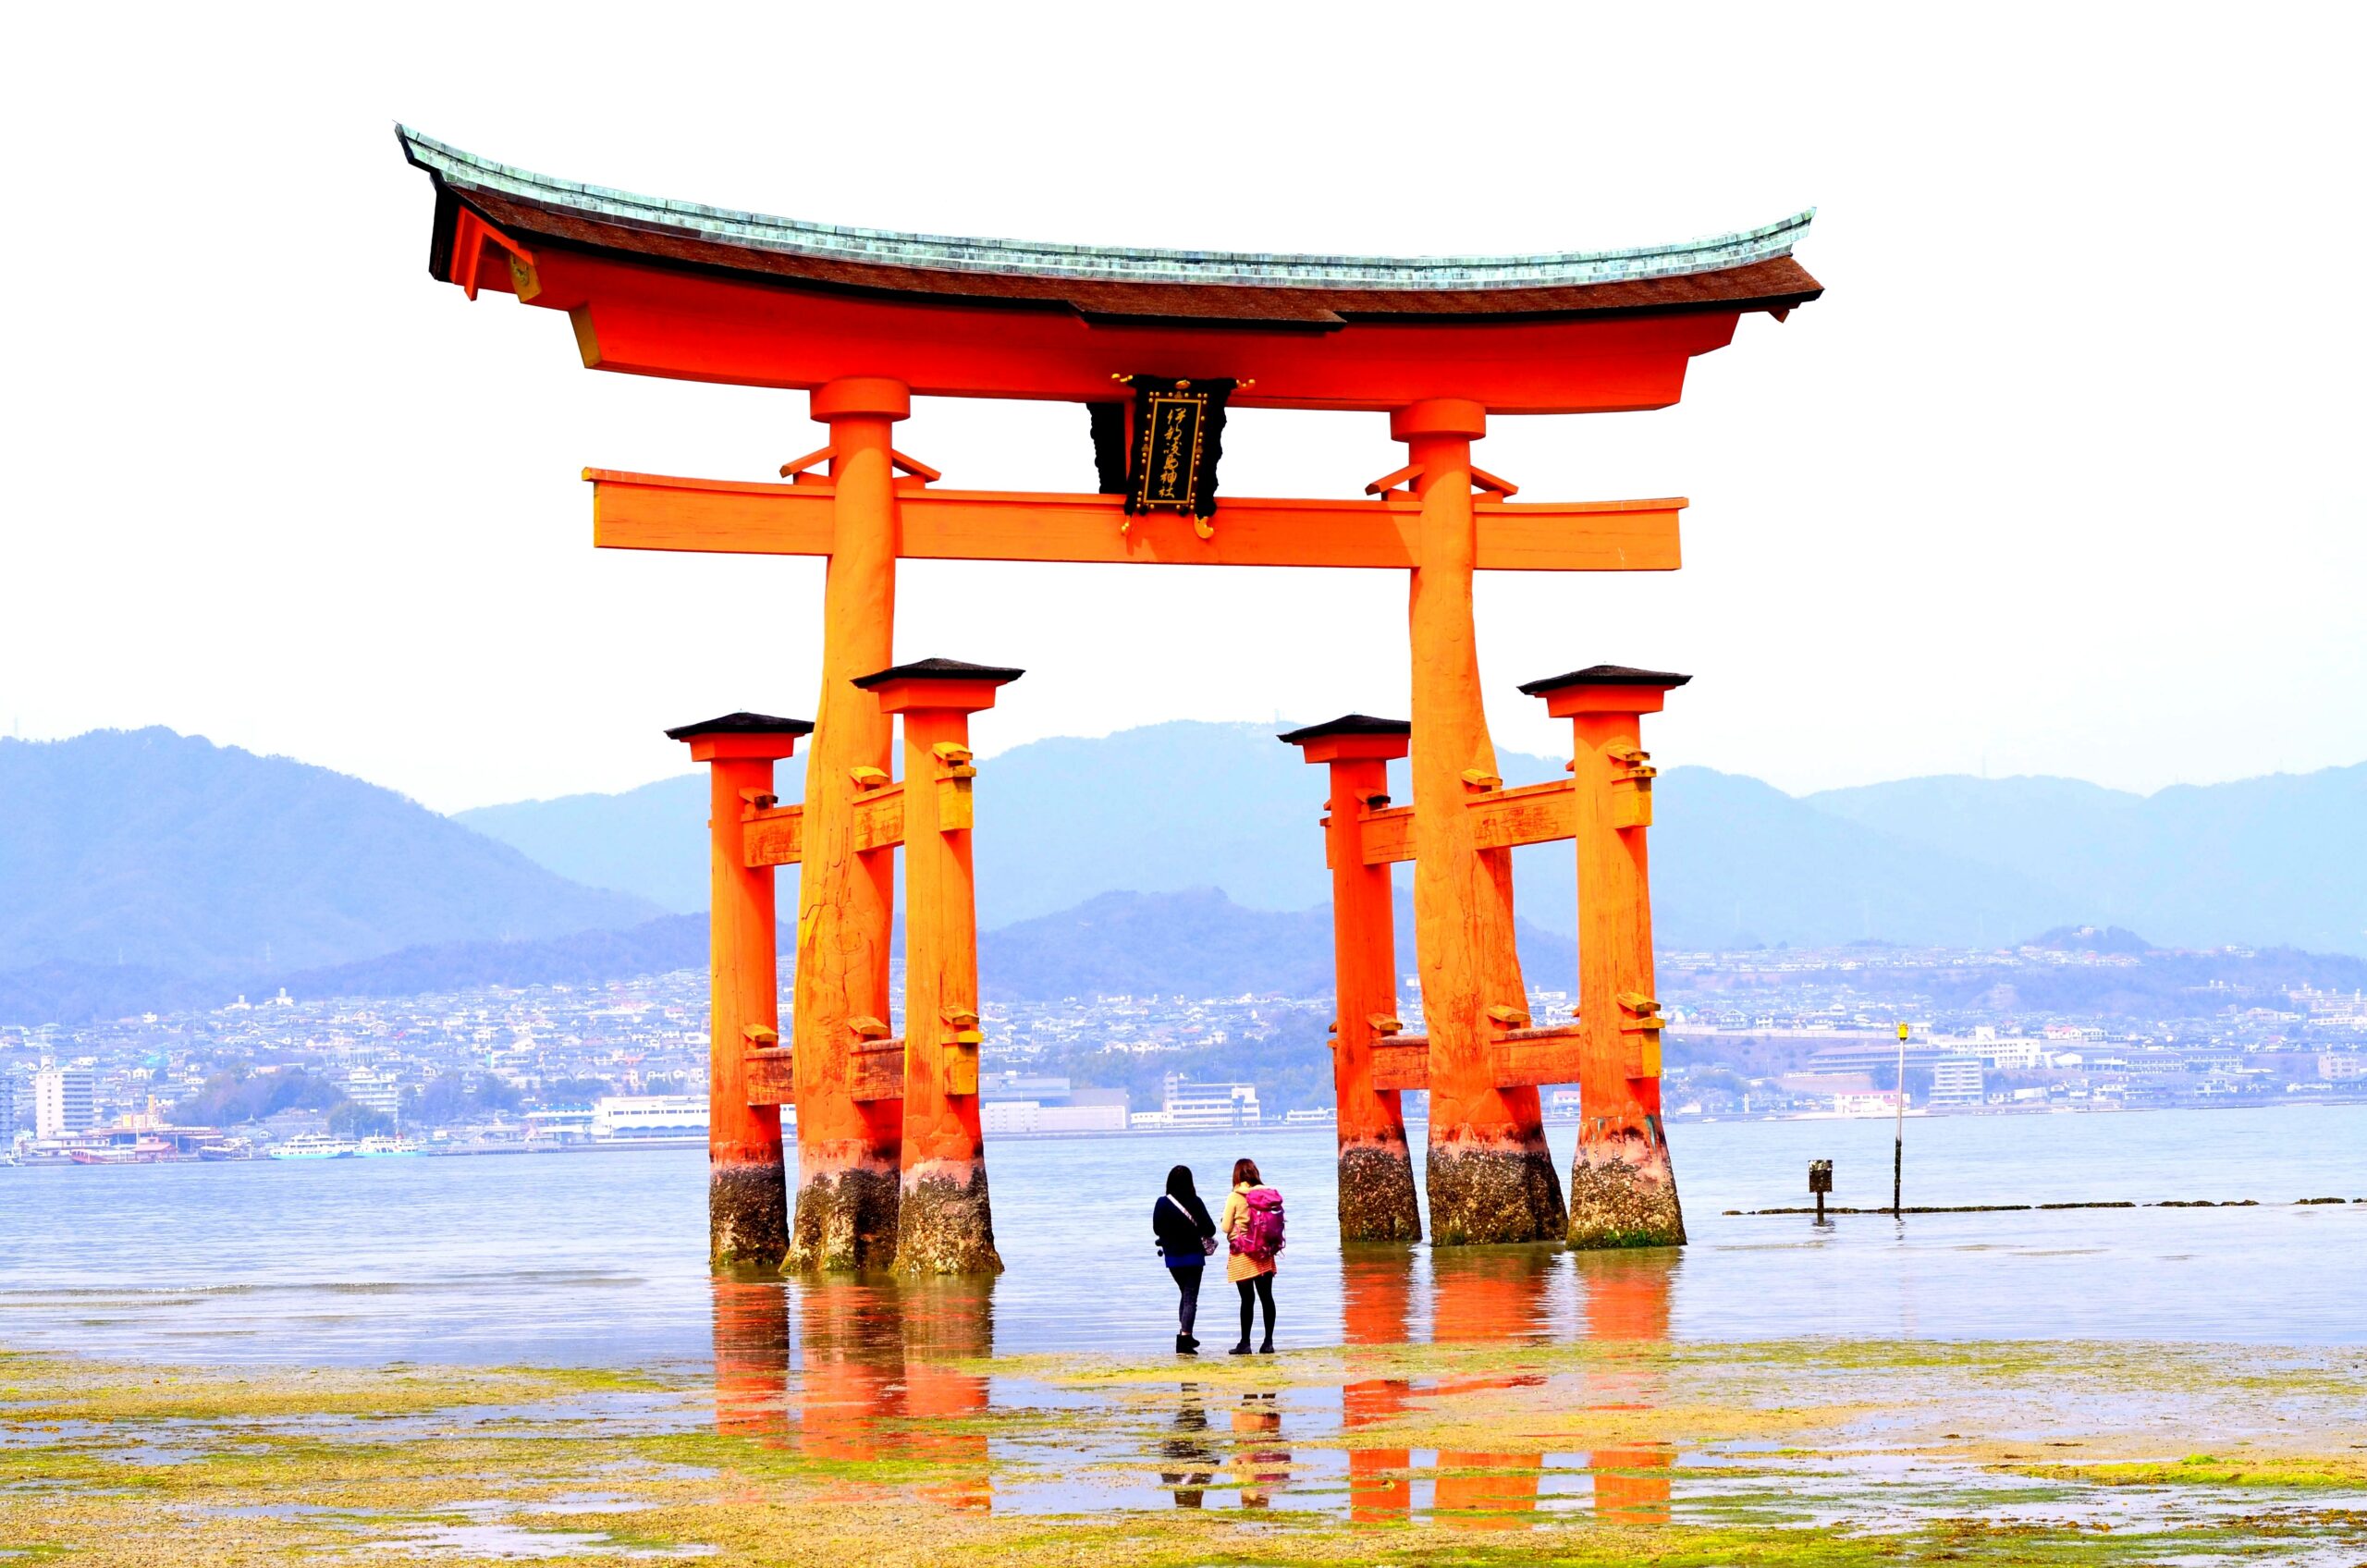 ทัวร์วันหยุด, Itsukushima Shrine สถานที่ 1 ใน 3 วิวที่สวย ที่สุดในญี่ปุ่น ทัวร์วันหยุด, Holidays Playful,